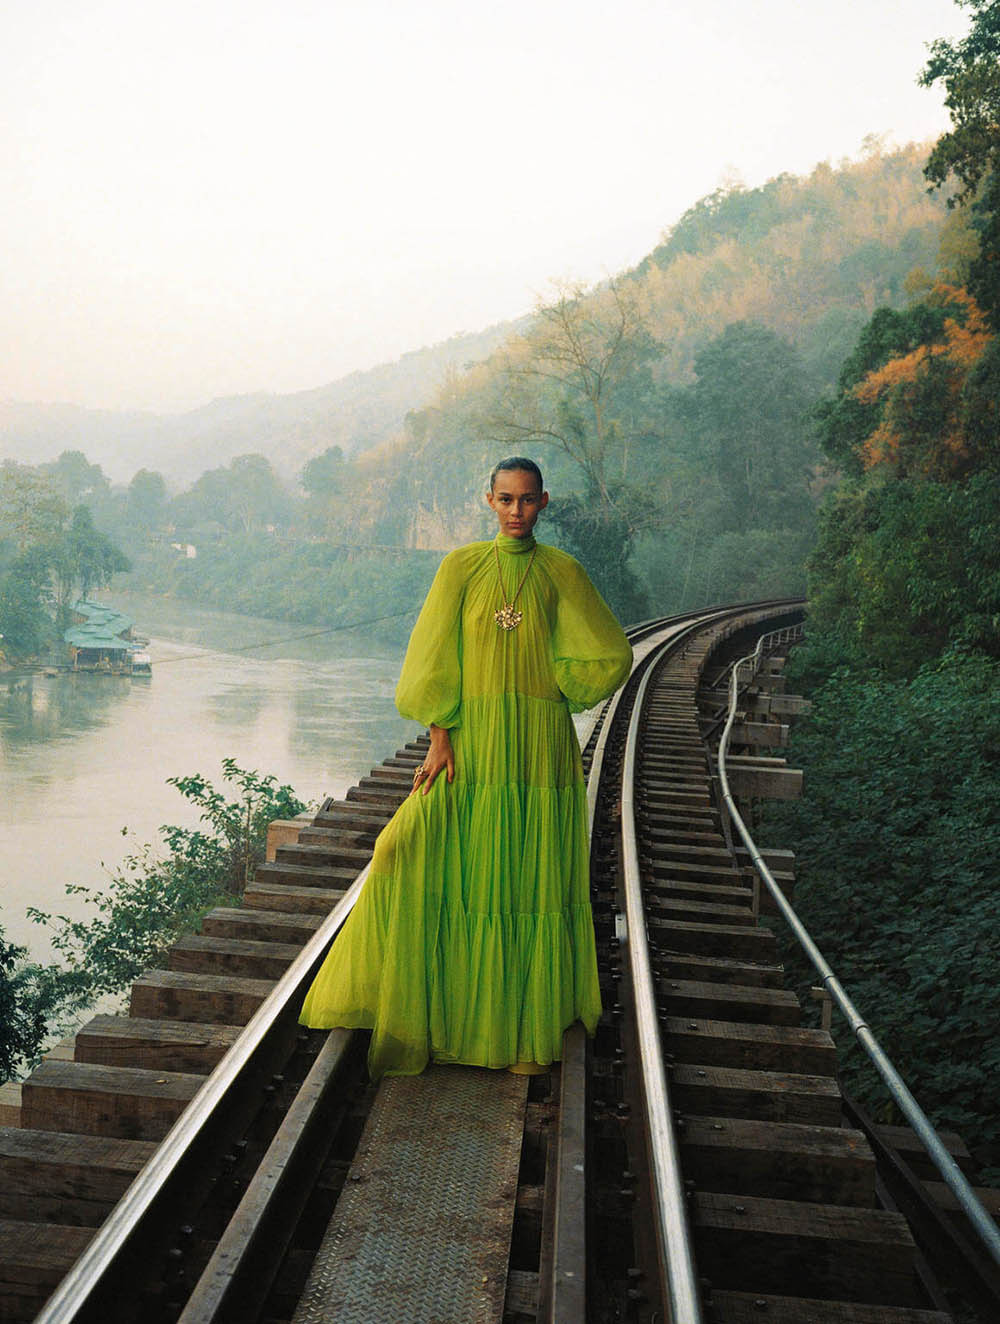 #Vogue2021Trends: Yerel Değerlerin Öne Çıktığı Seyahatler